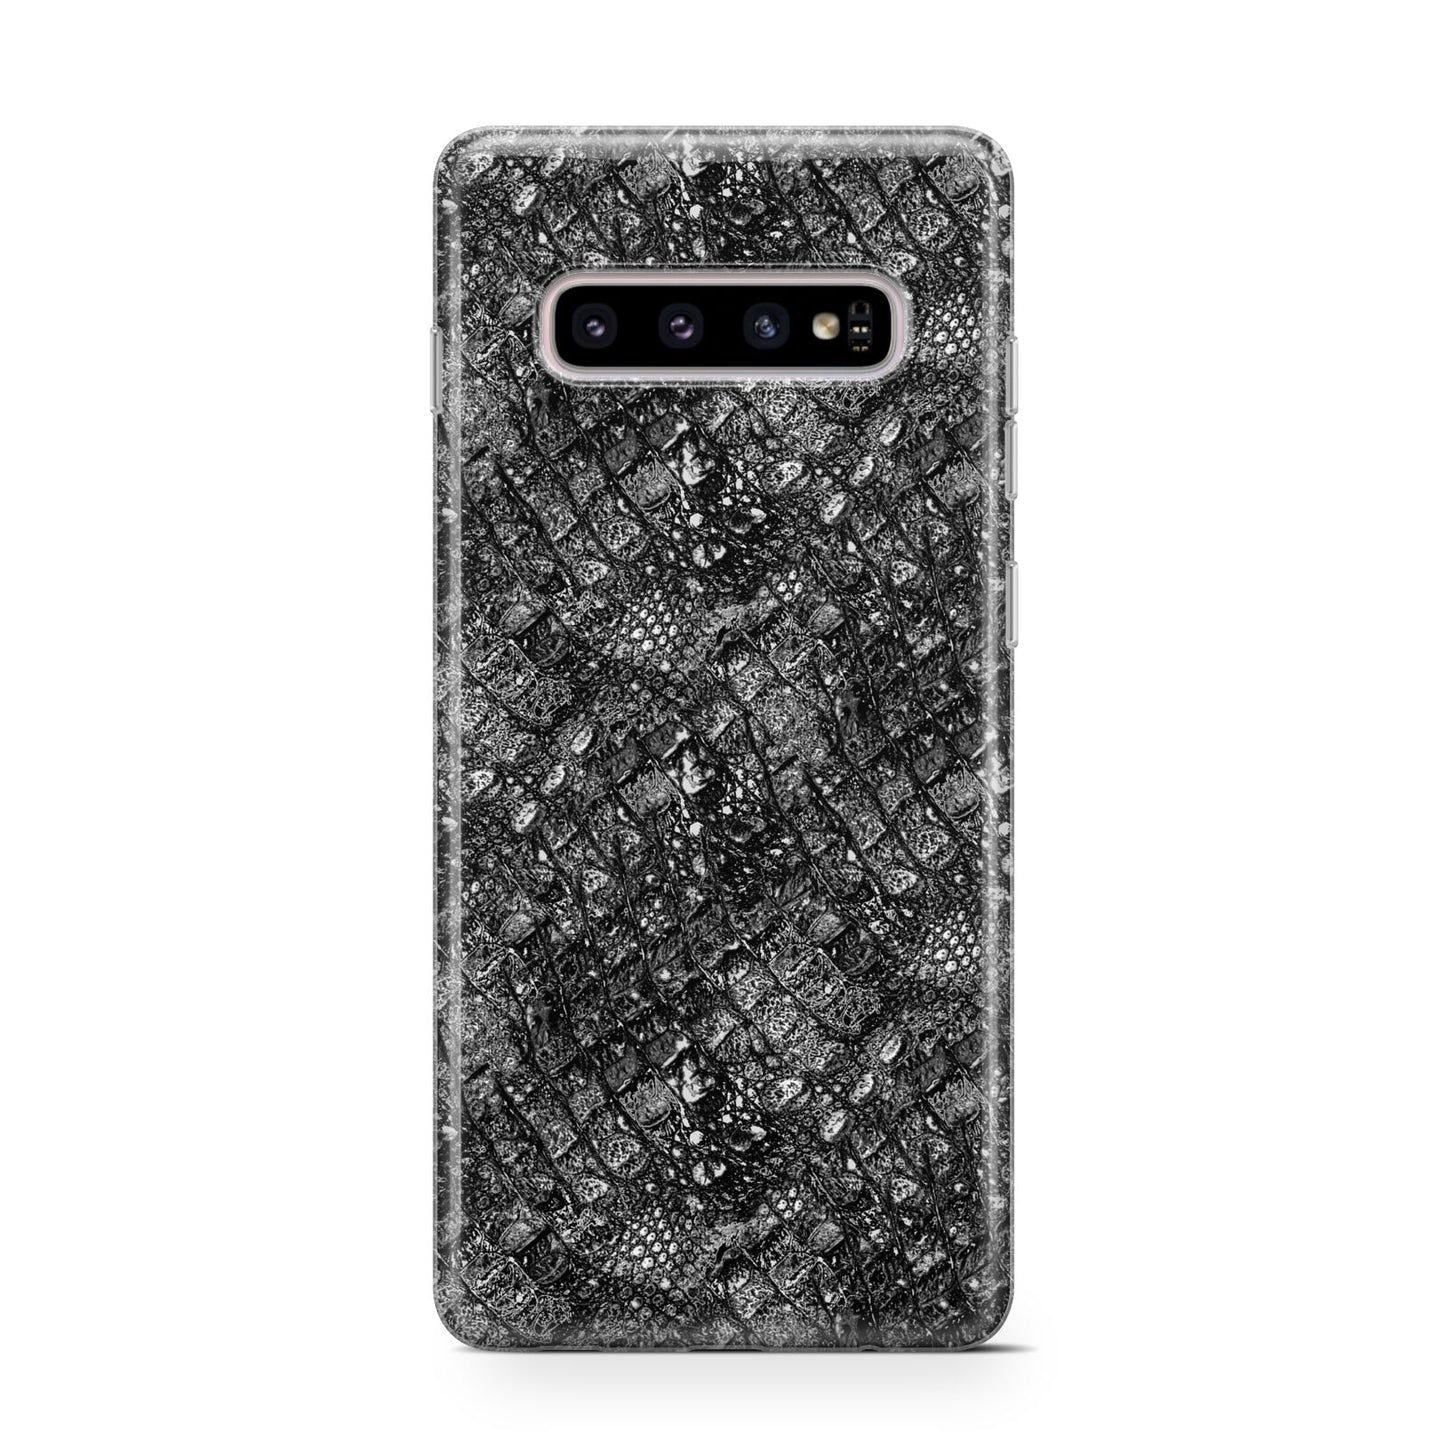 Snakeskin Design Samsung Galaxy S10 Case